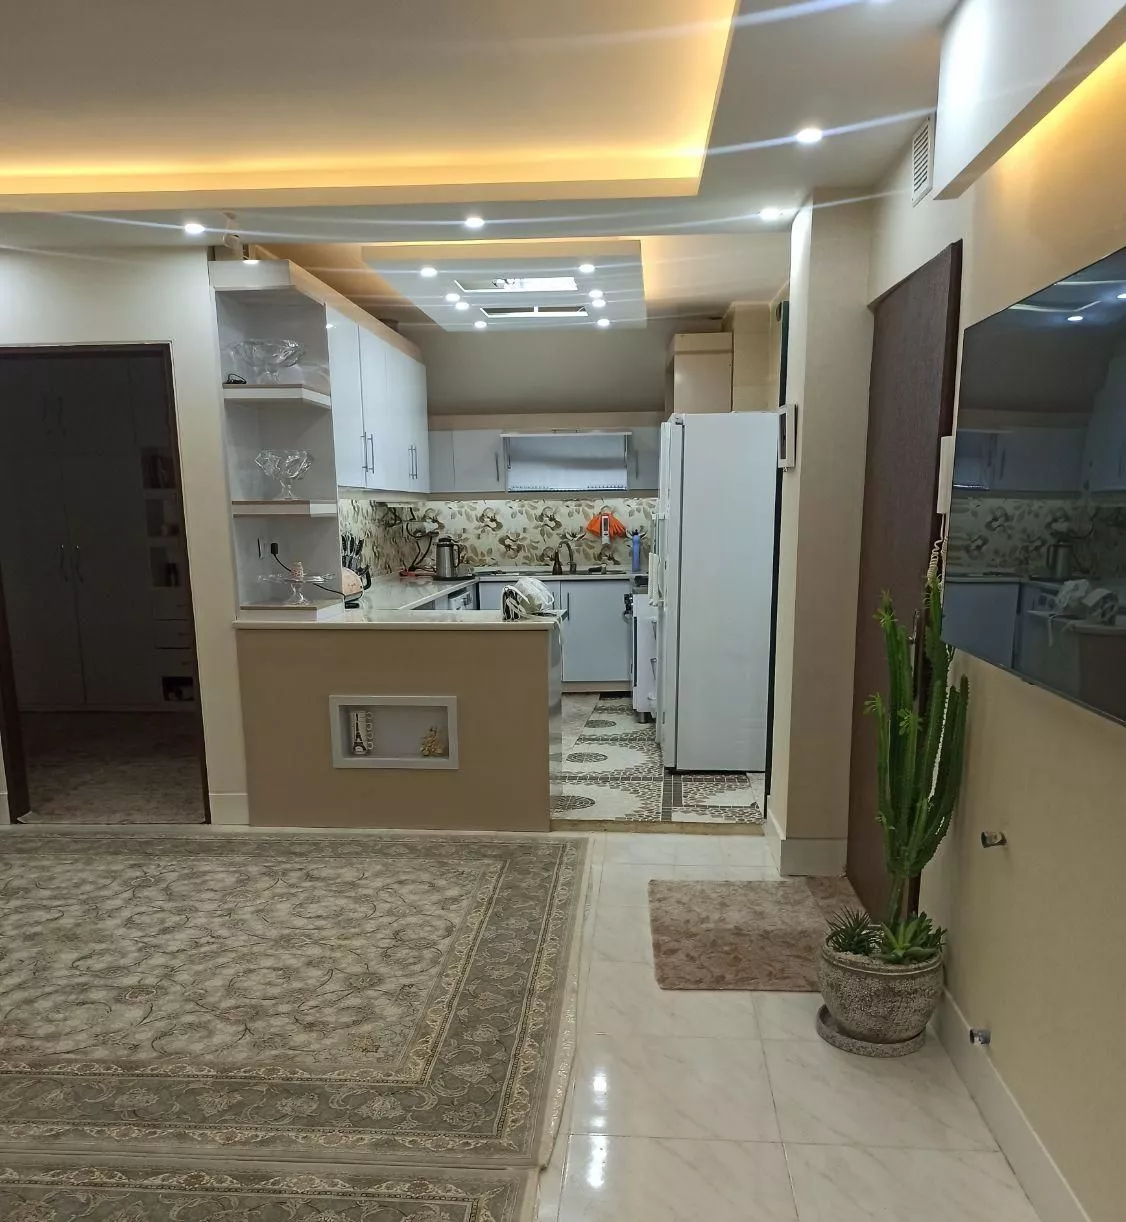 فروش آپارتمان در اصفهان مناسب سرمایه گذاری متراژ ۹